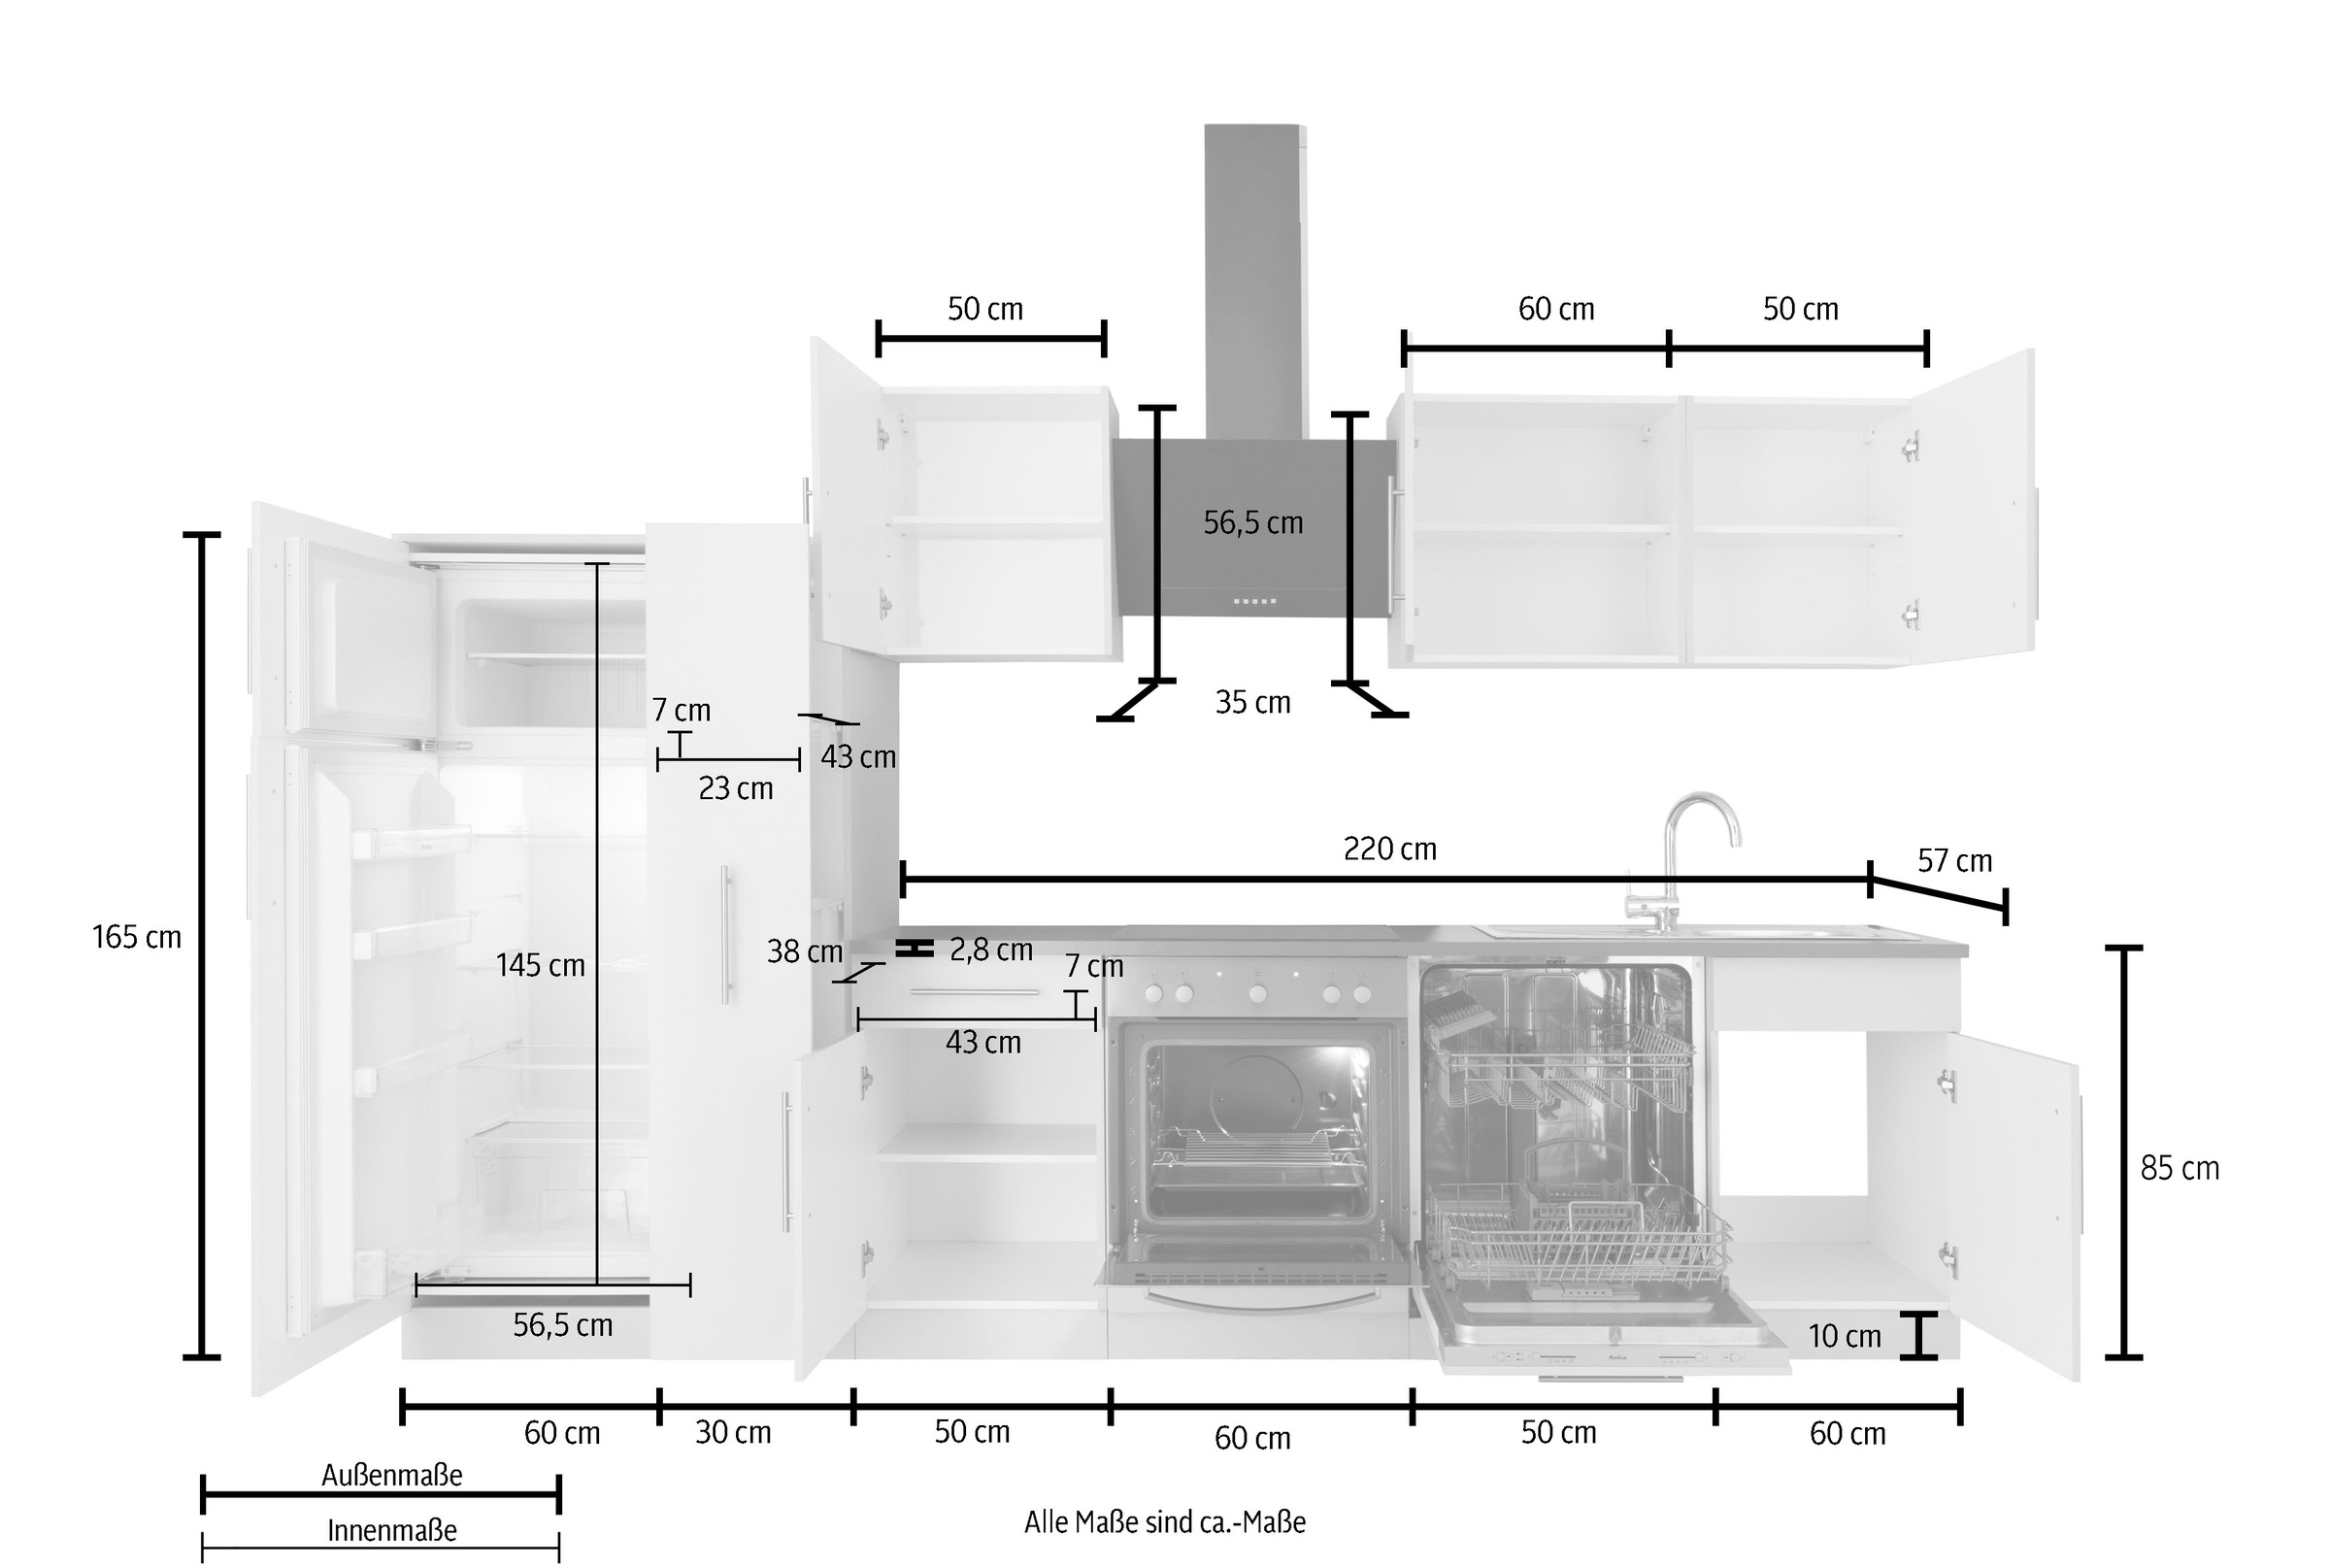 wiho Küchen Küchenzeile »Cali«, mit E-Geräten, Breite 310 cm